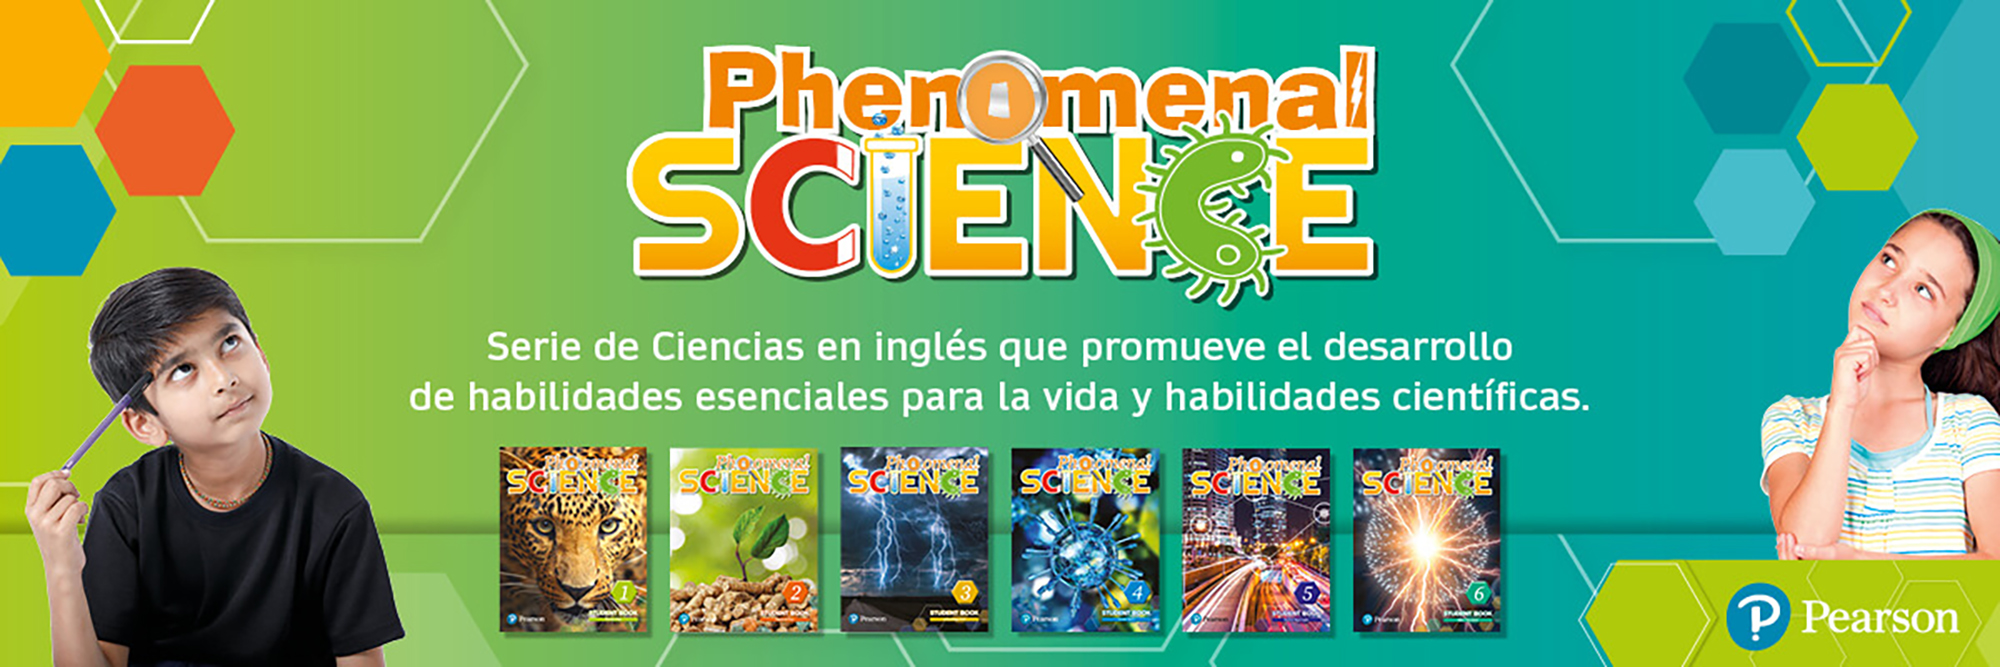 Phenomenal Science_web2